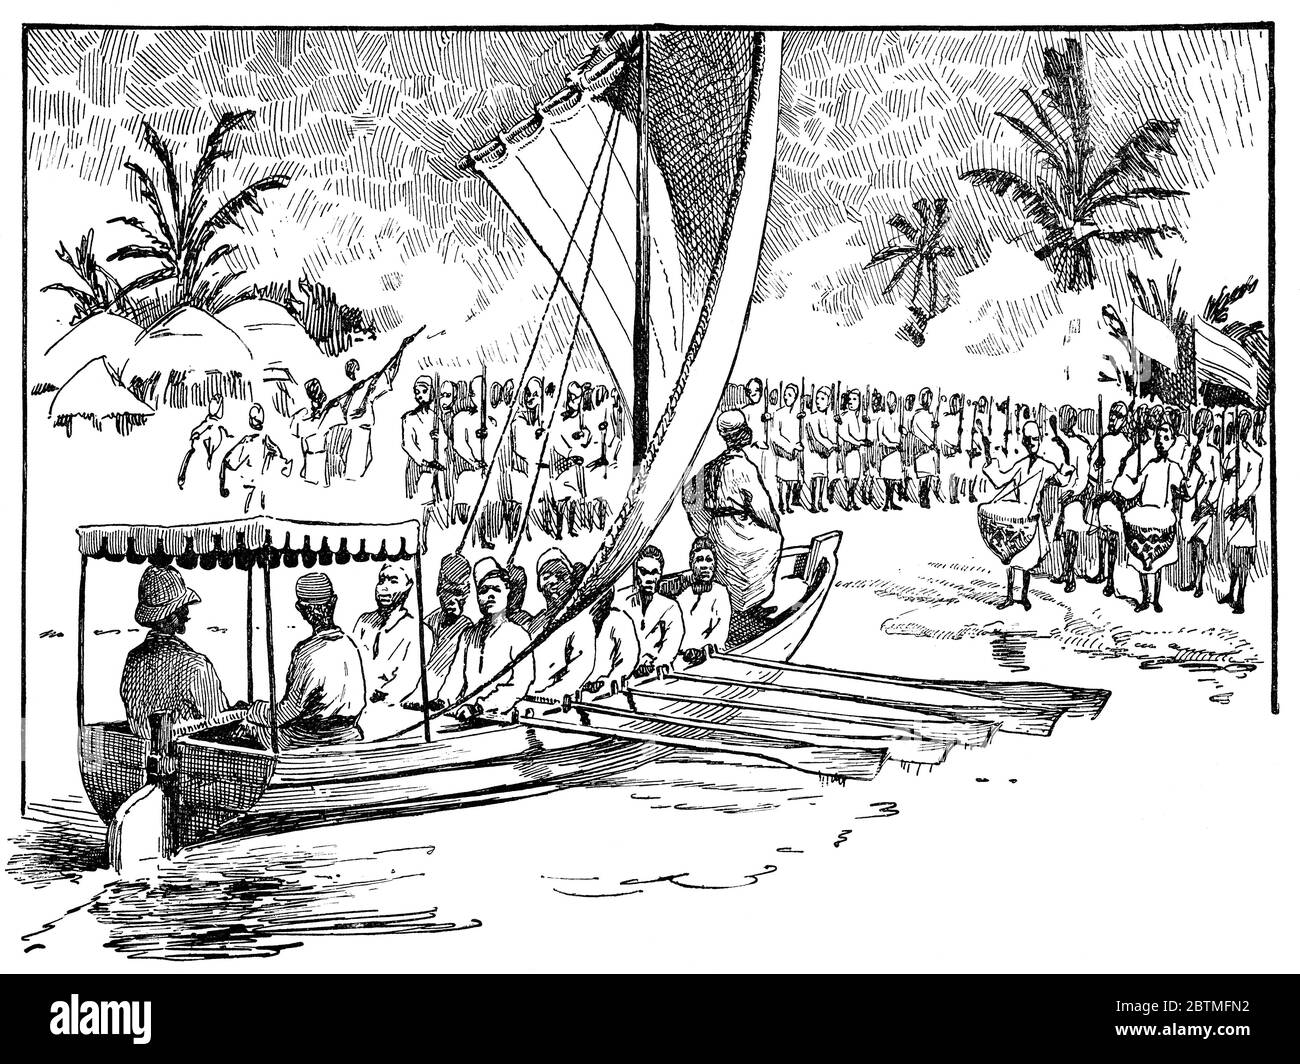 Feierliches Treffen von Henry Morton Stanley und Muteesa I. von Buganda. Illustration des 19. Jahrhunderts. Weißer Hintergrund. Stockfoto